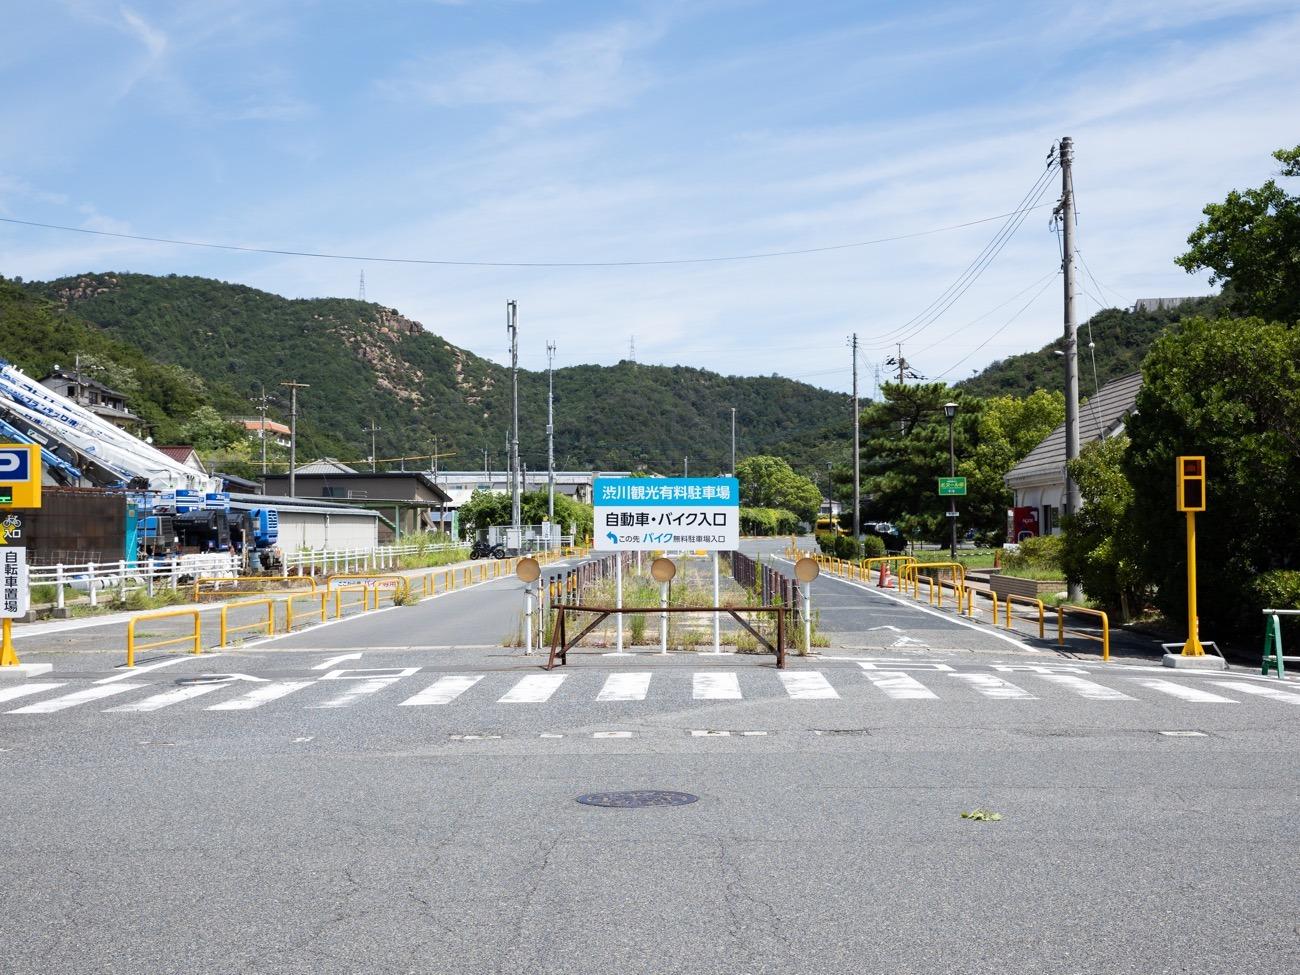  駐車場は「渋川観光駐車場」をご利用ください。駐車場から施設まで徒歩5分